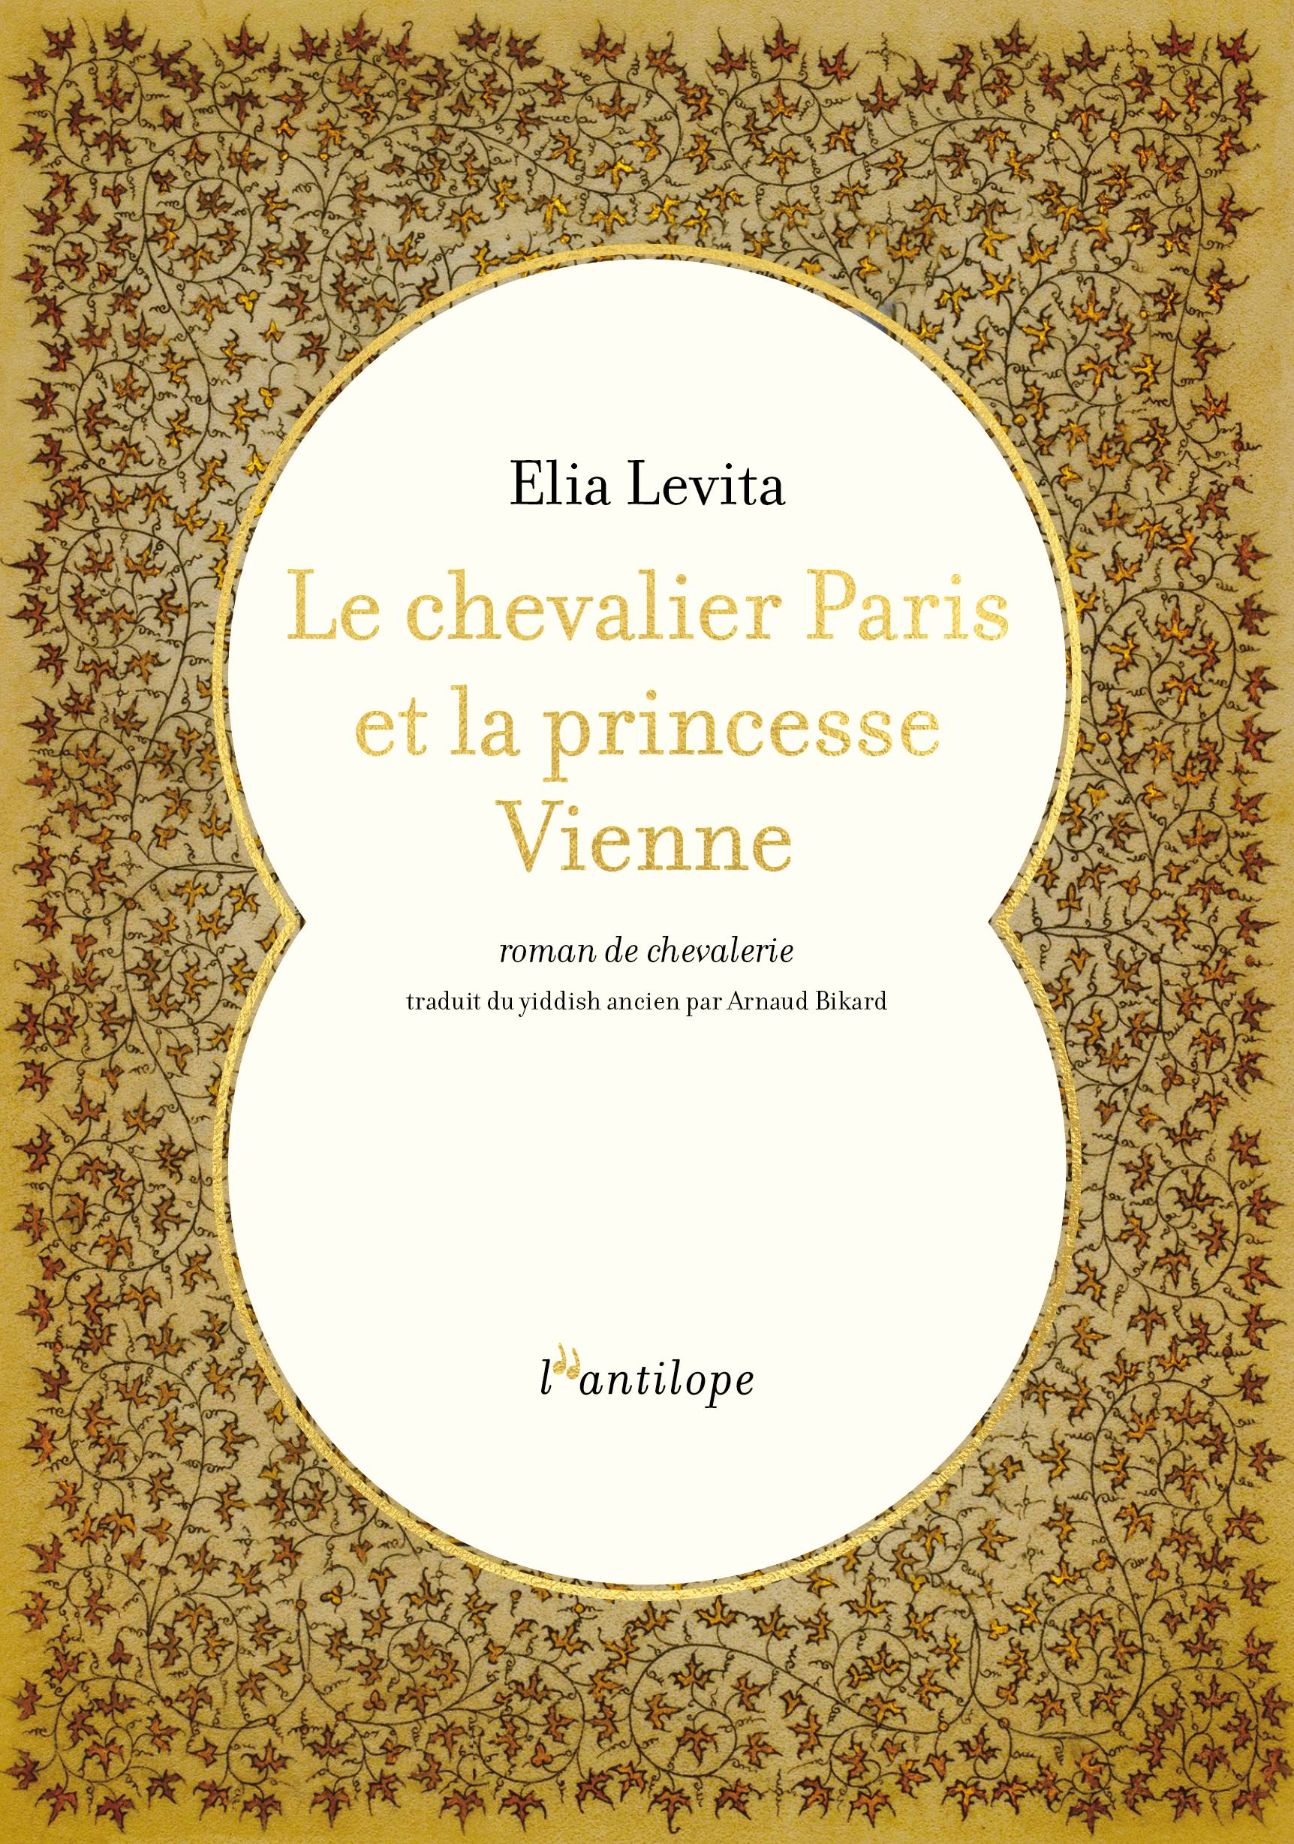 Elia Levita, Le chevalier Paris et la princesse Vienne, roman de chevalerie